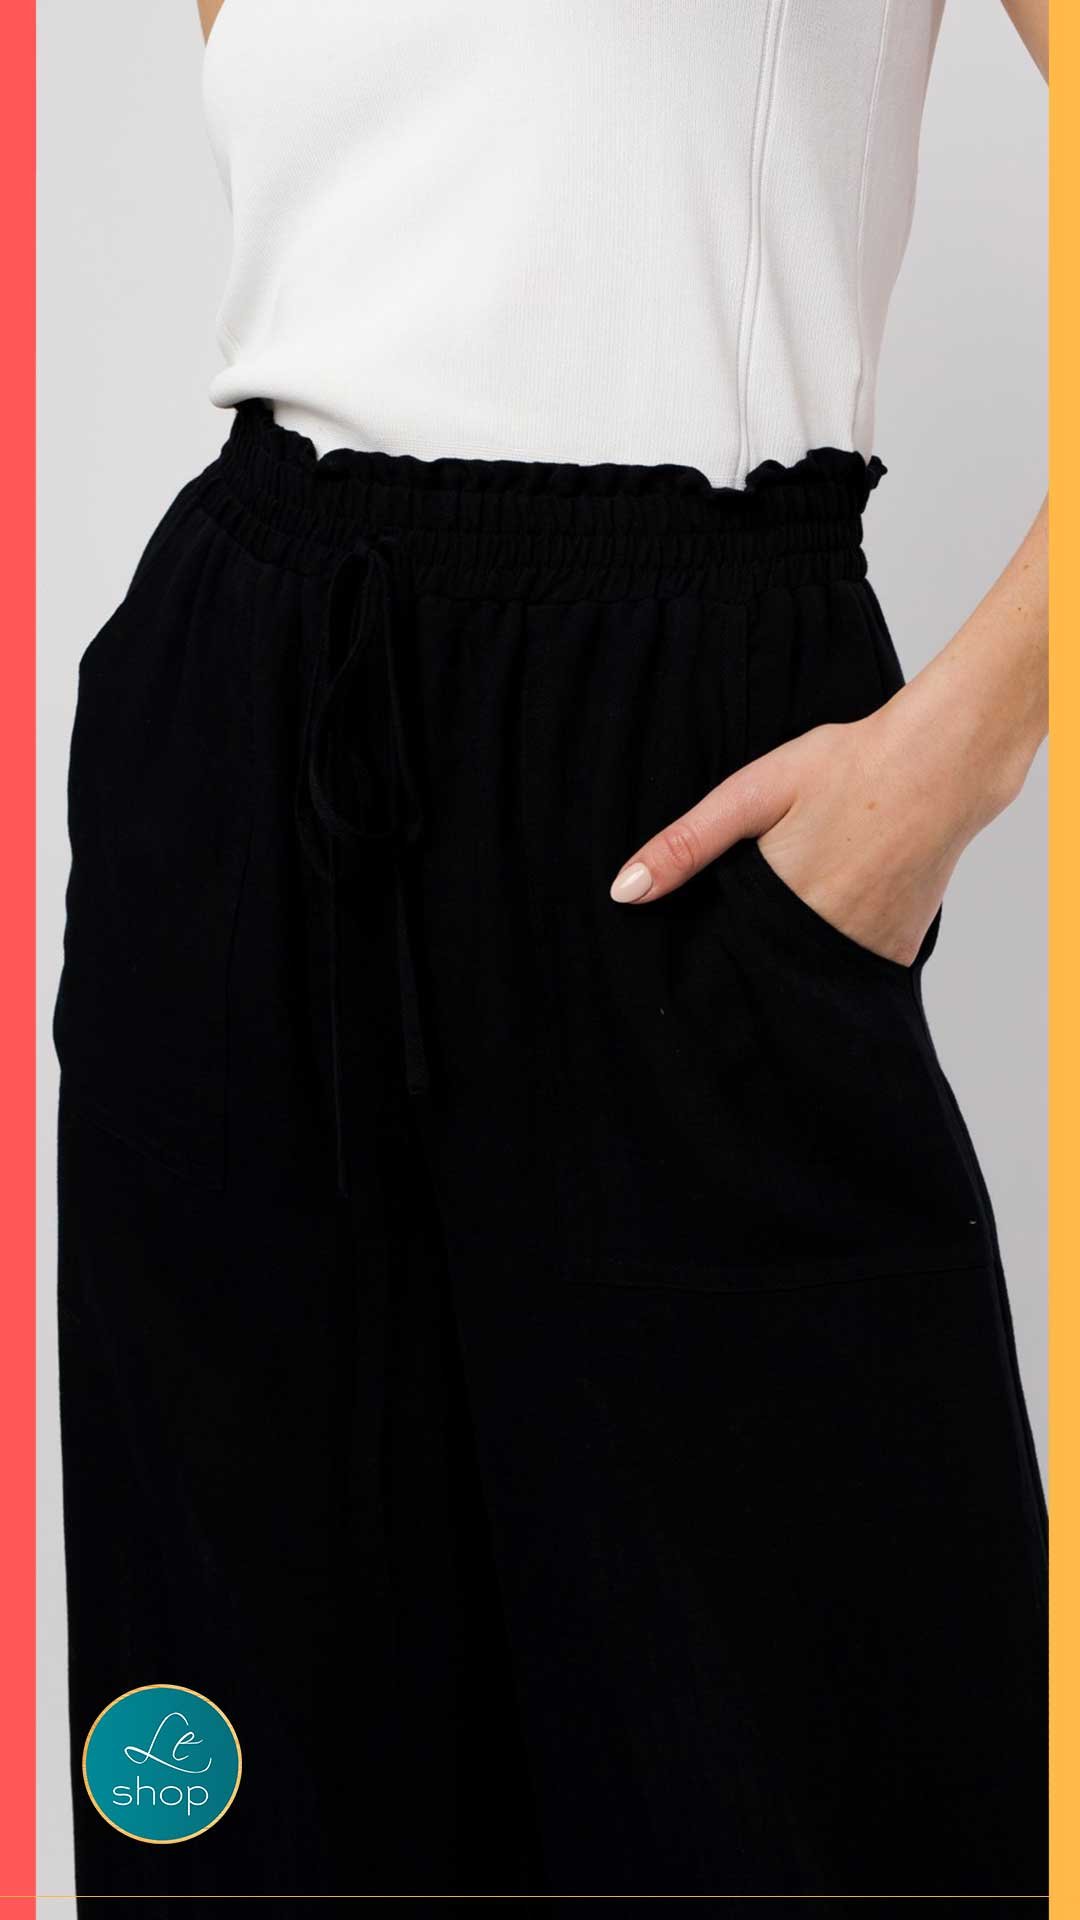 Pantalon tipo culotte deshilachado negro LPL1575